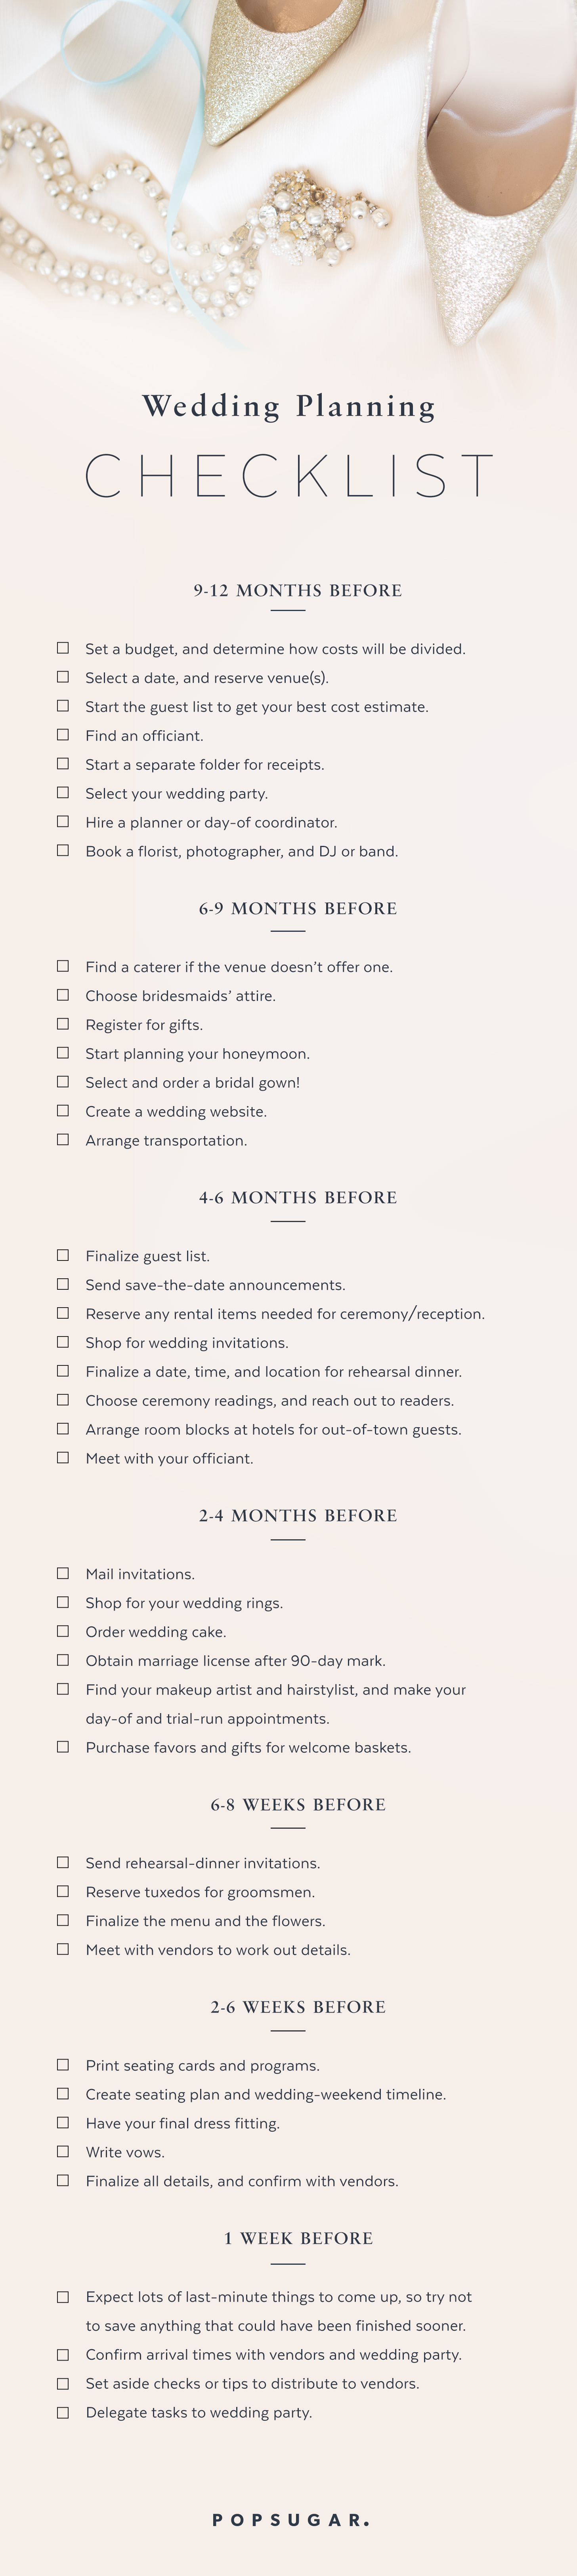 Planning A Wedding Checklist Uk